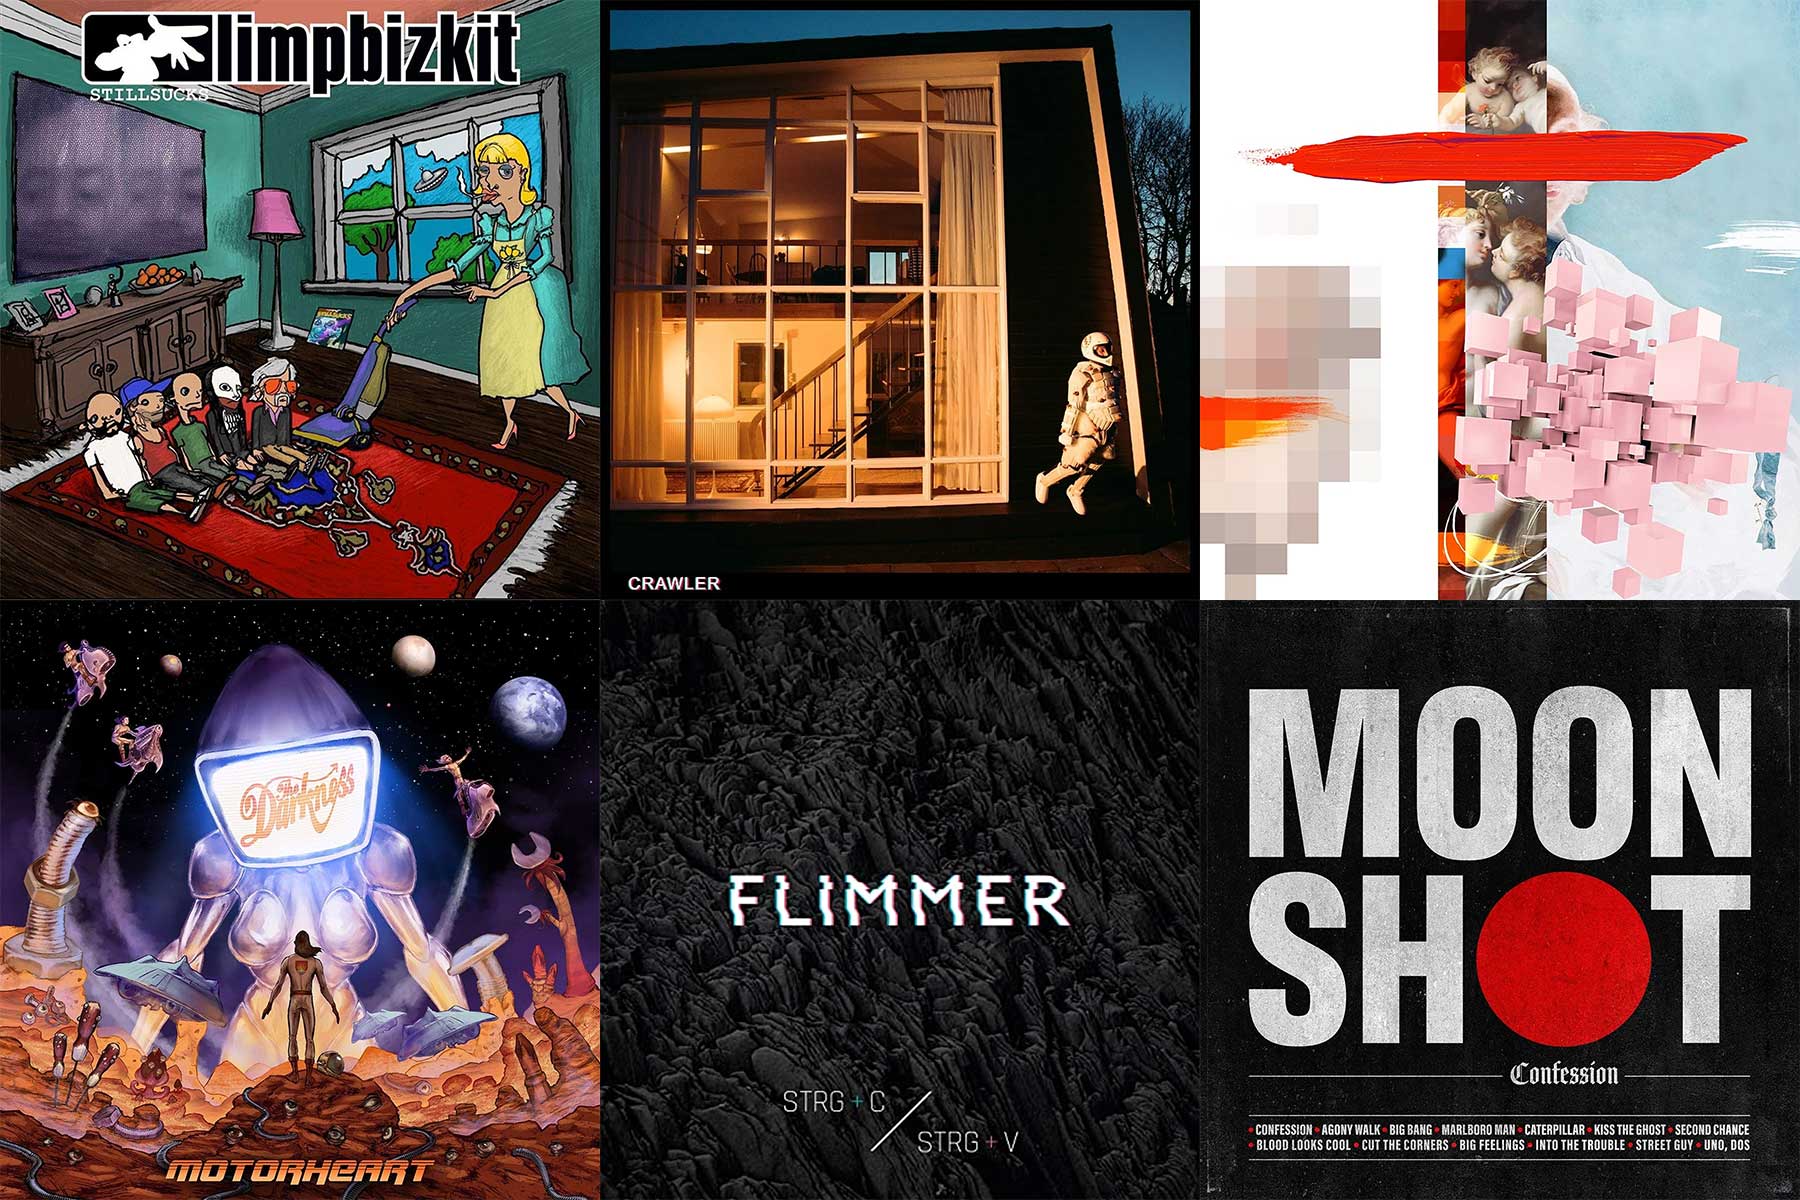 November-Kurzreviews: Neue Alben von Limp Bizkit, IDLES, Biffy Clyro, The Darkness, FLIMMER & Moon Shot album-kurzreviews_November-2021 